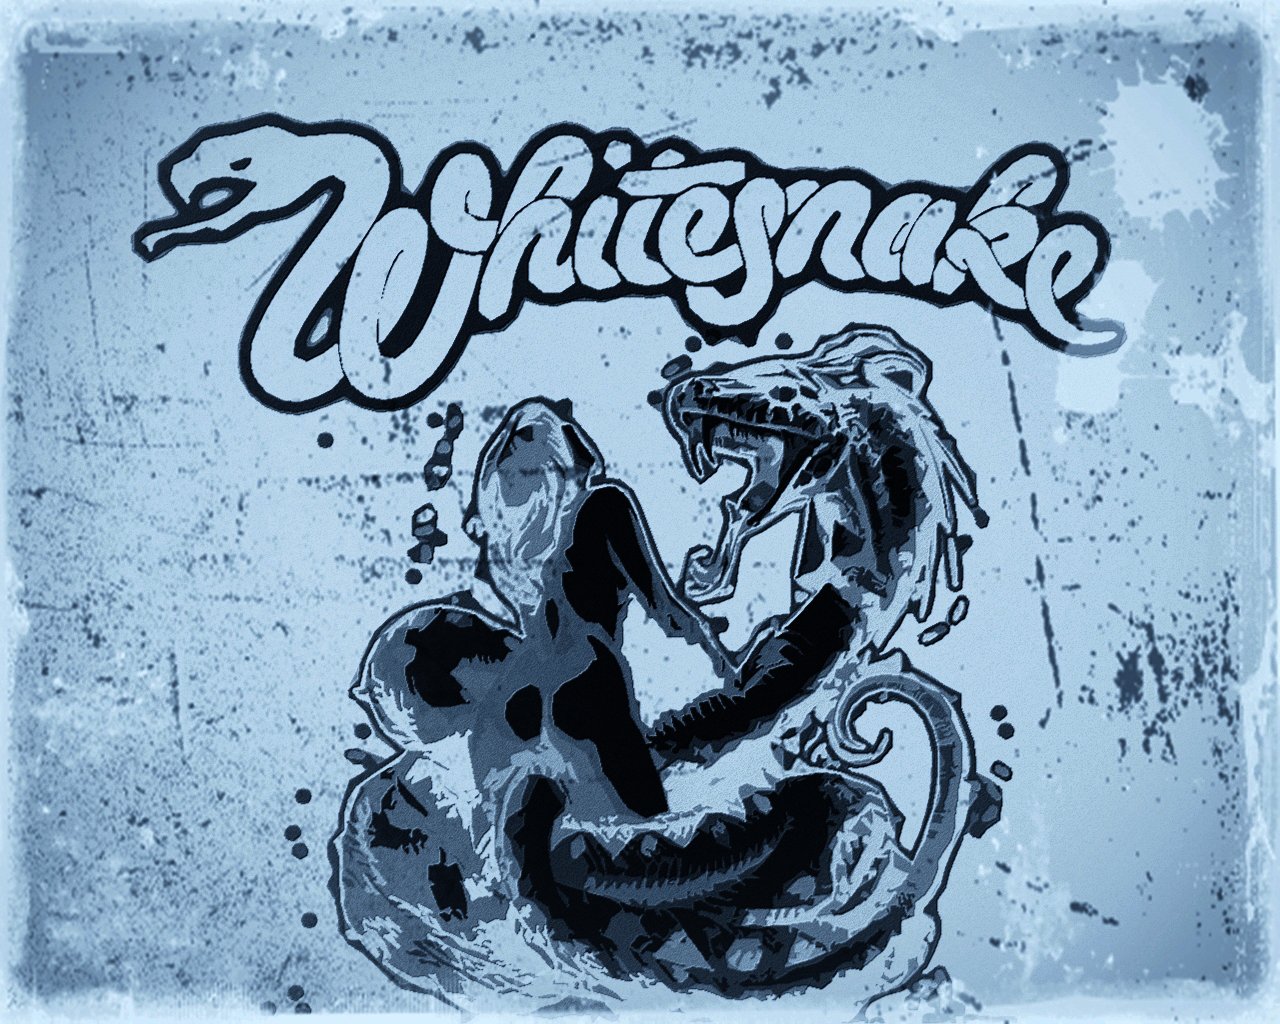 whitesnake lovehunter by krassrocks on